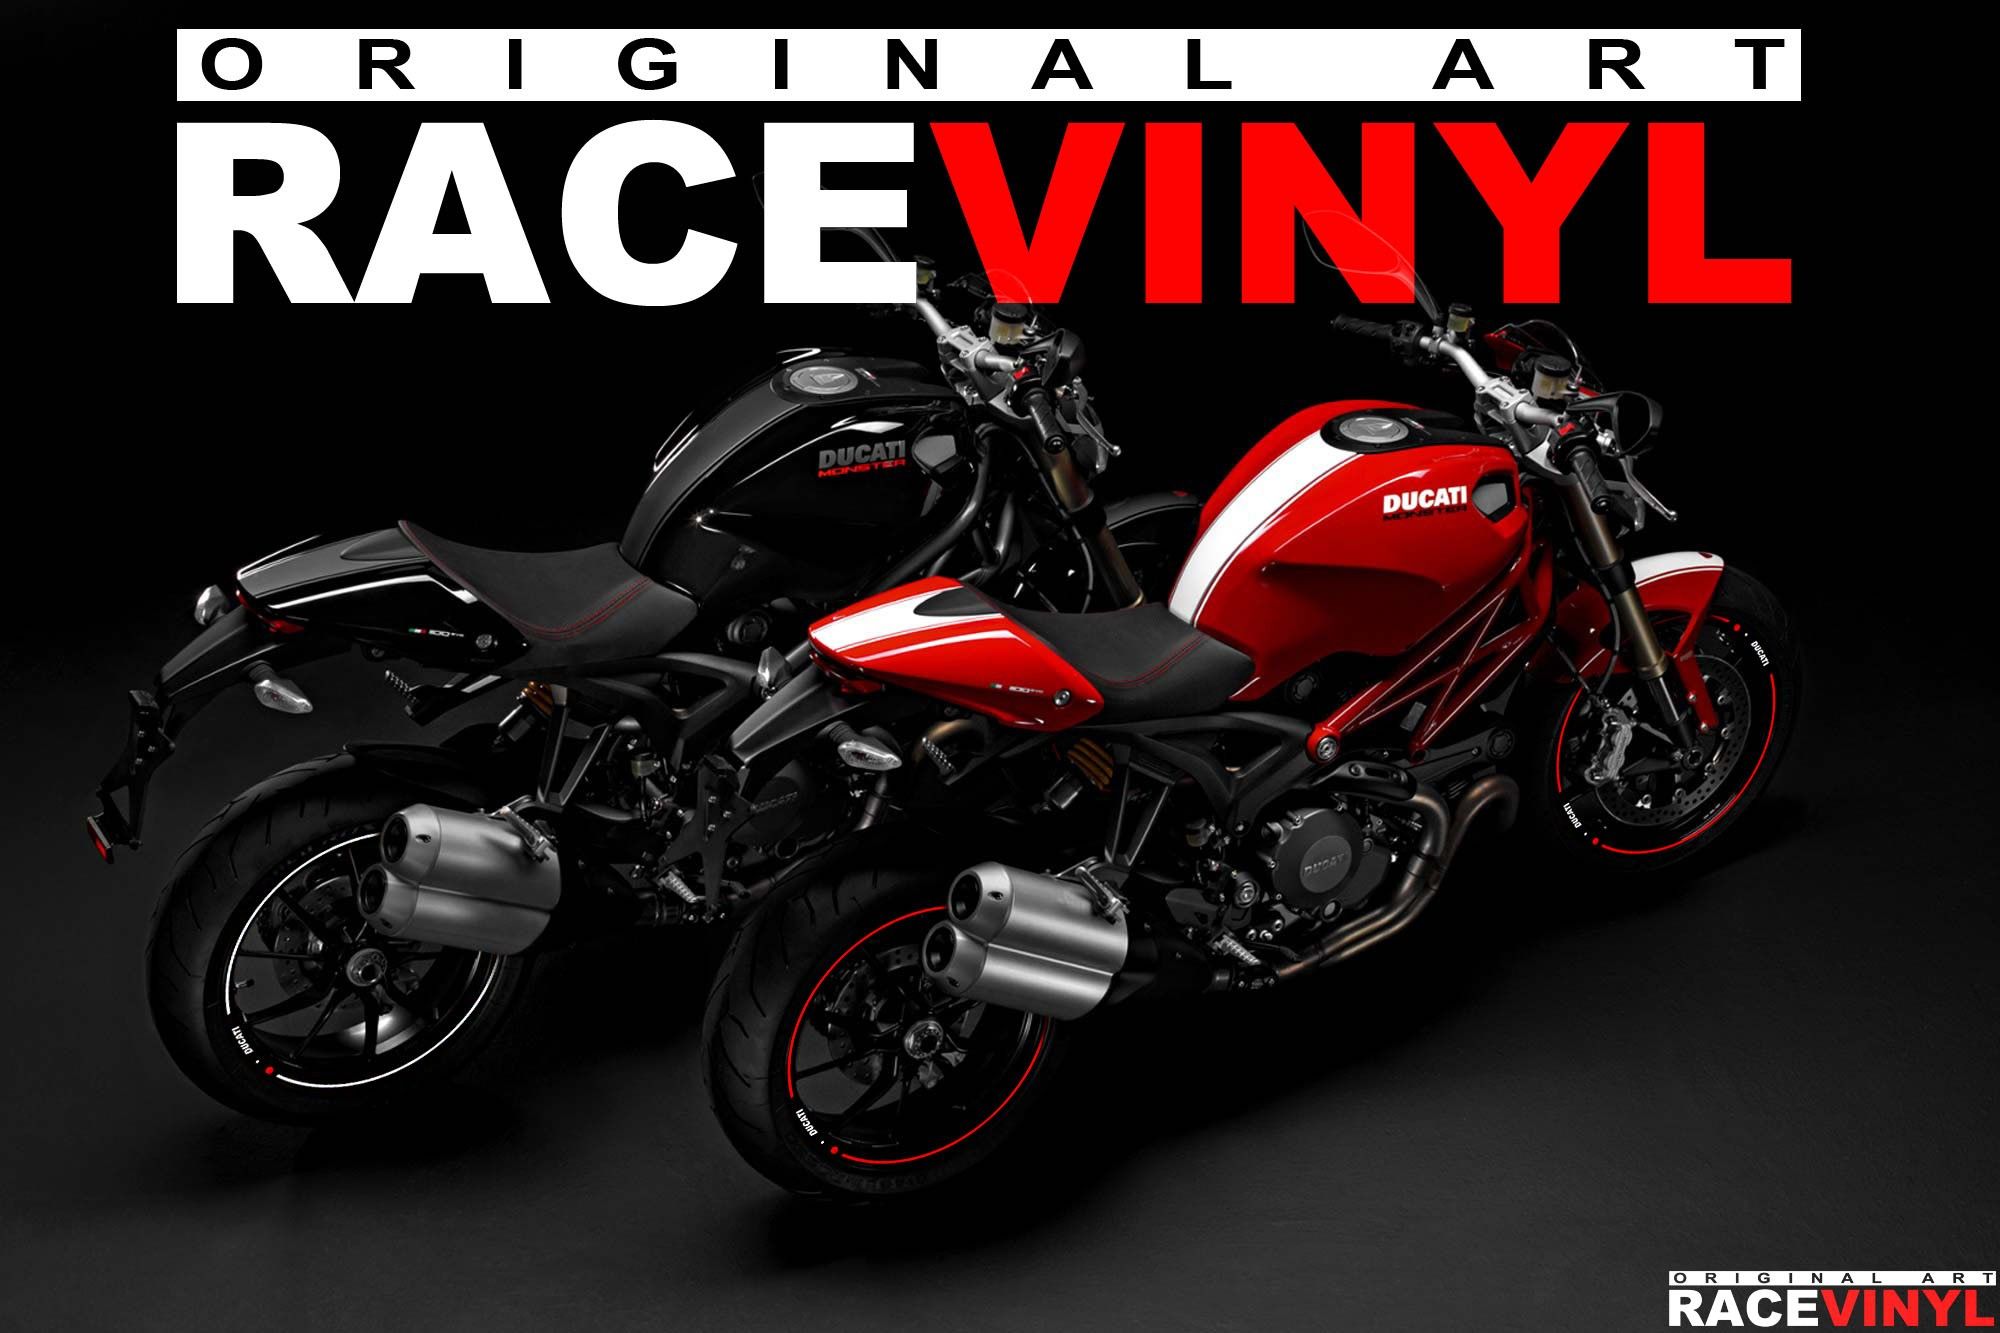 Ducati Monster tuning accesorios vinilos y pegatinas para llantas racevinyl